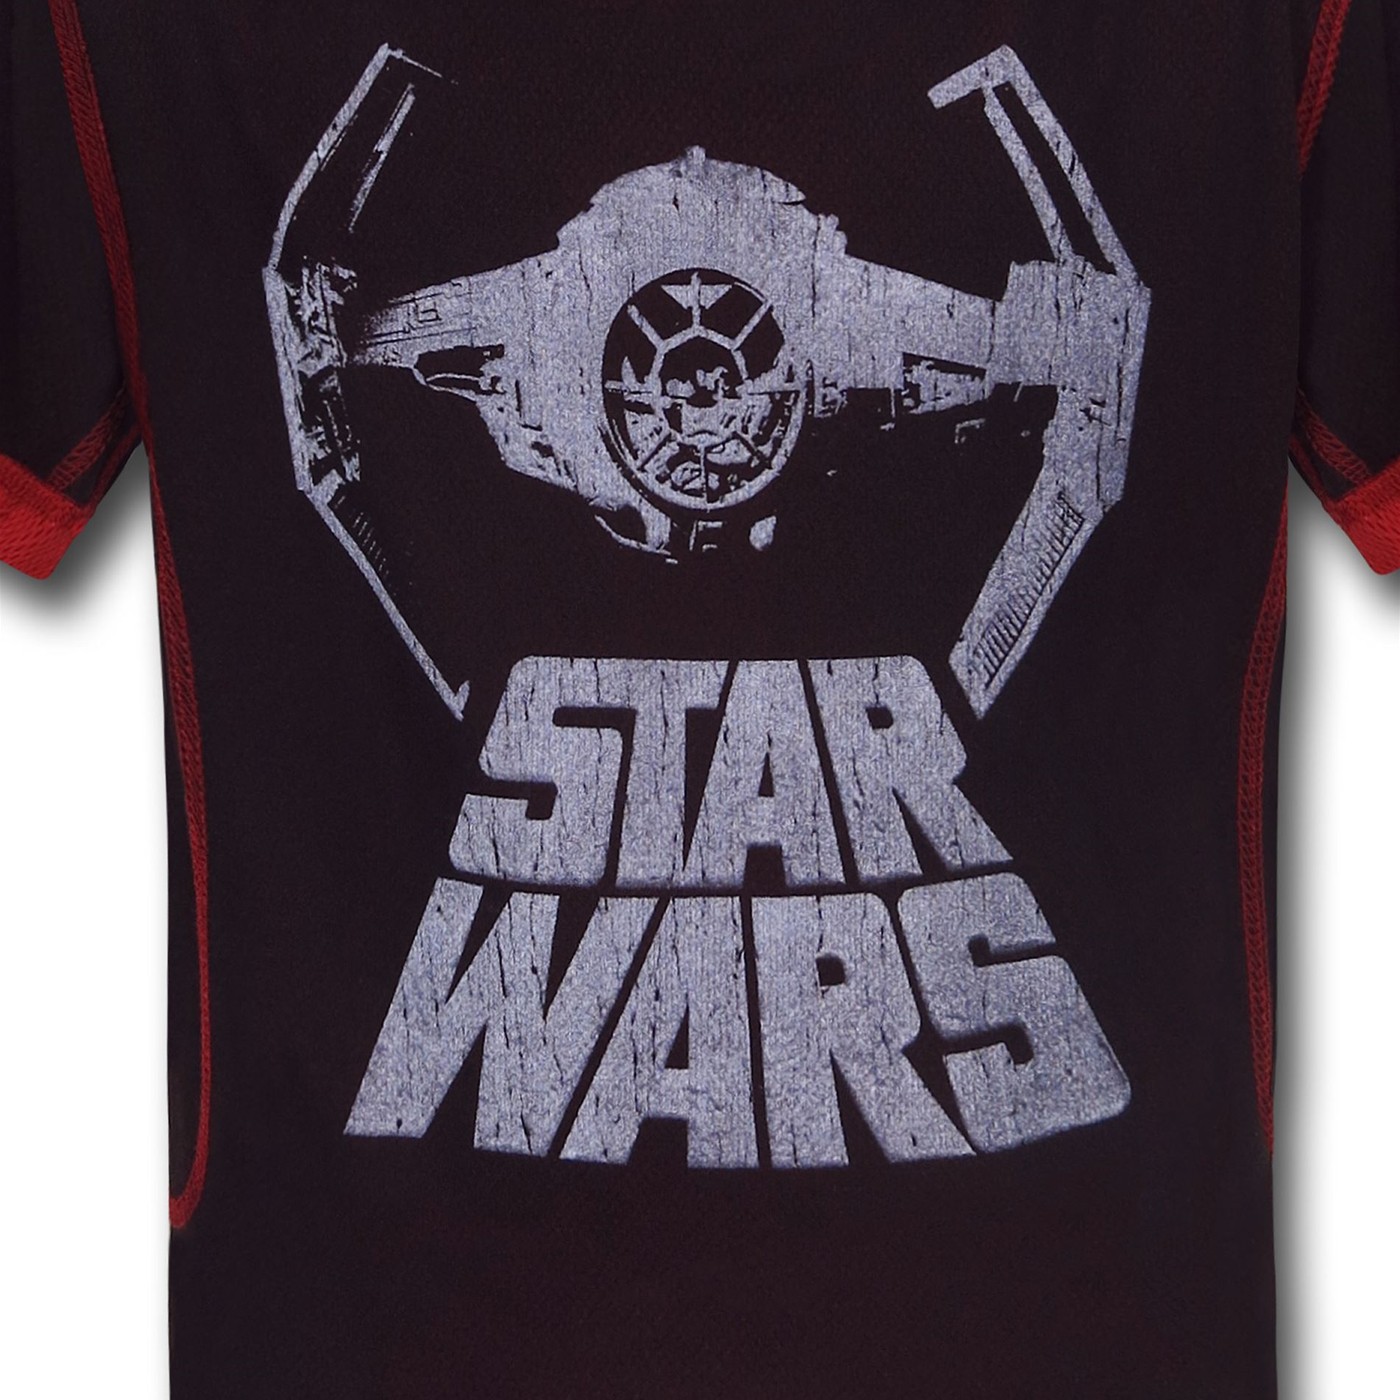 Star Wars TIE Fighter Polymesh Kids T-Shirt